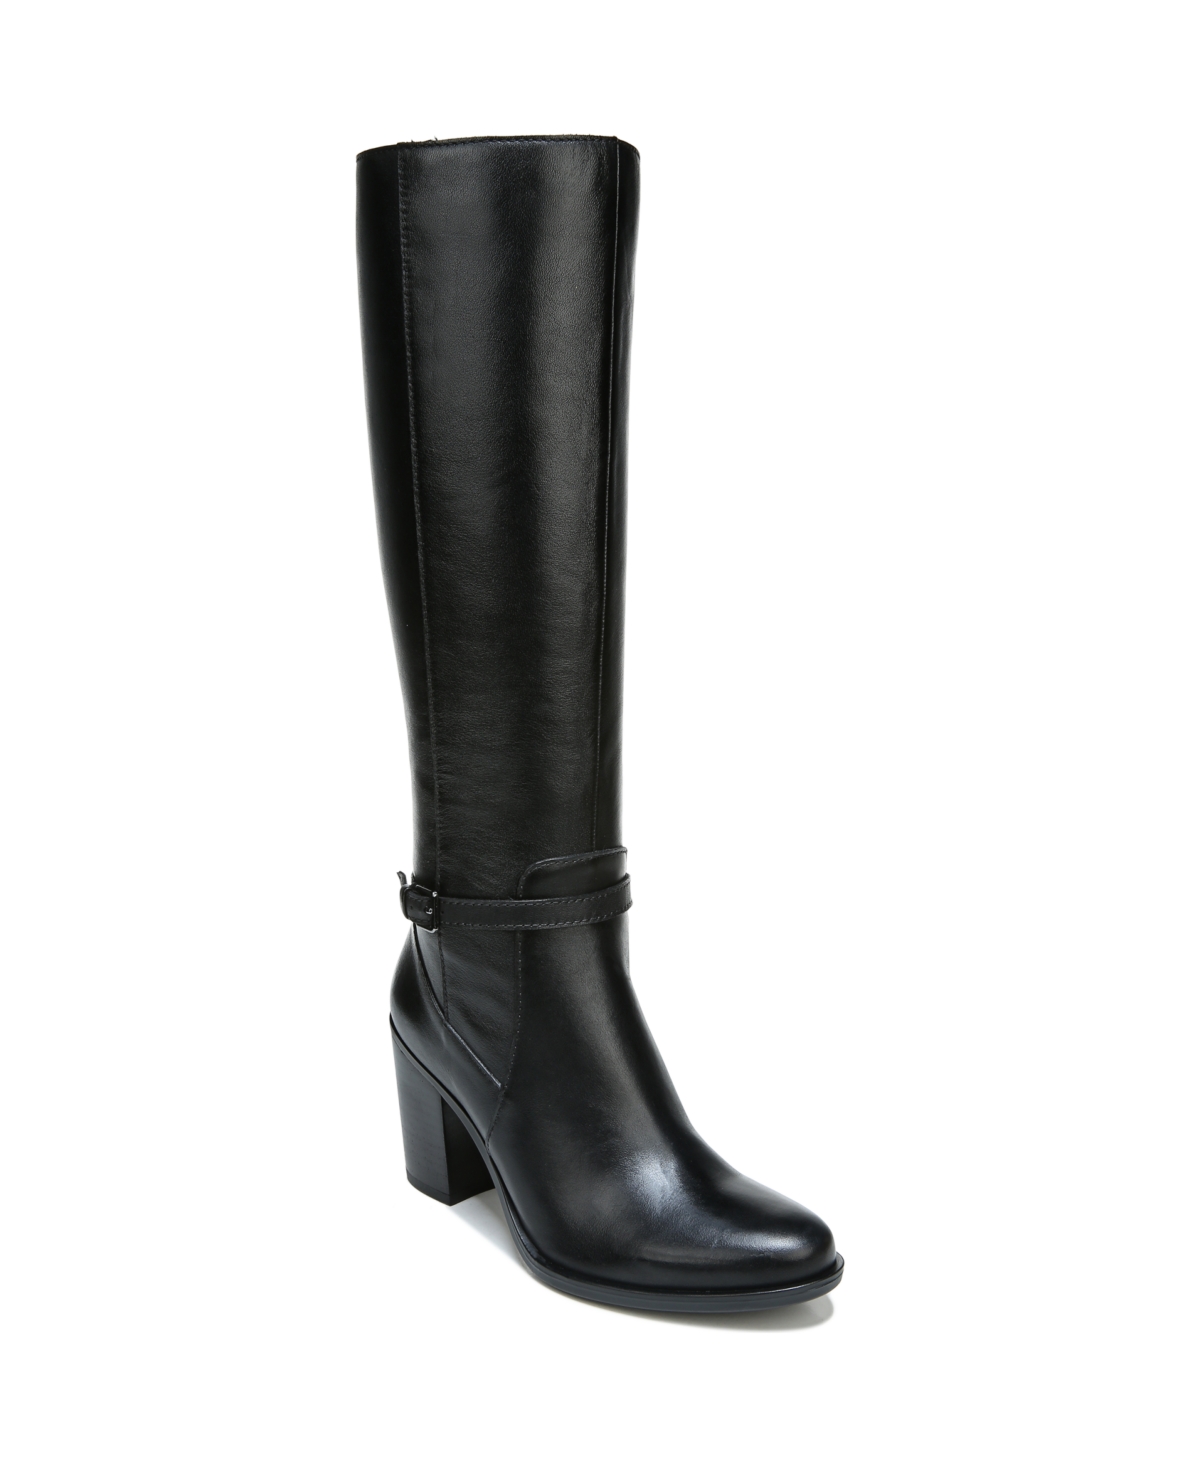 Kalina Narrow Calf High Shaft Boots - Black Leather